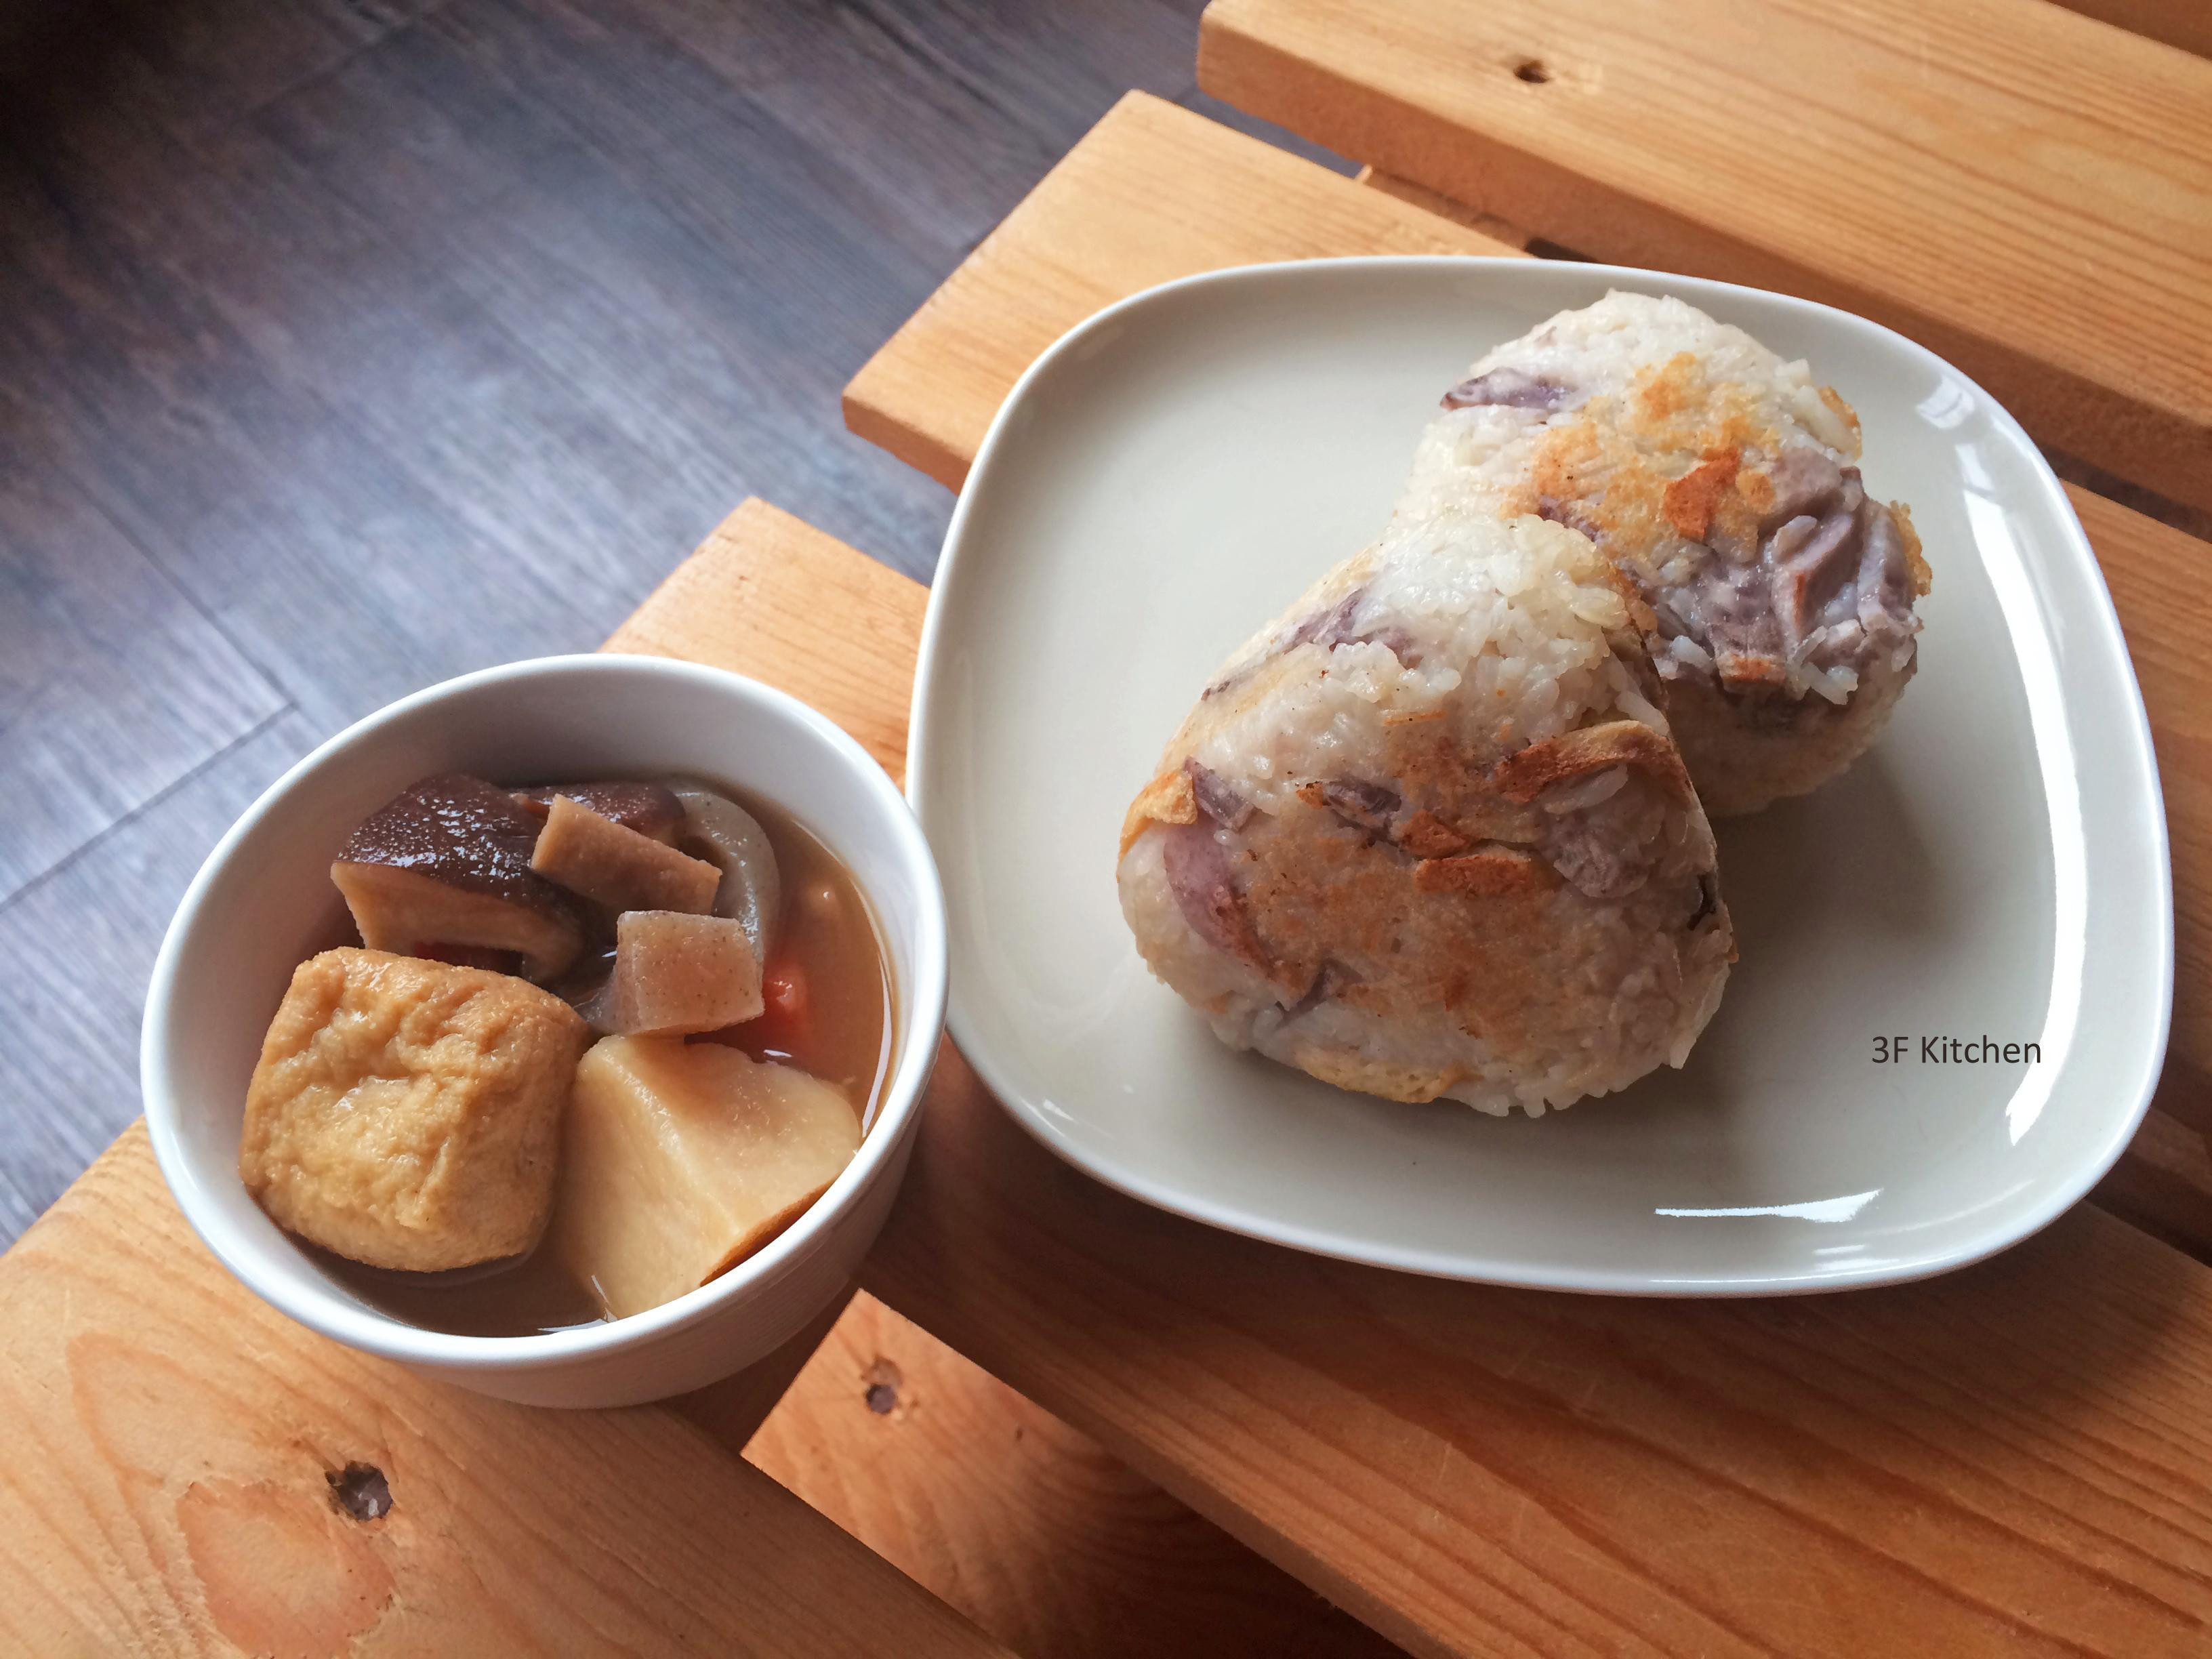 芋頭香菇油豆腐炊飯飯糰+筑前煮 / 全素